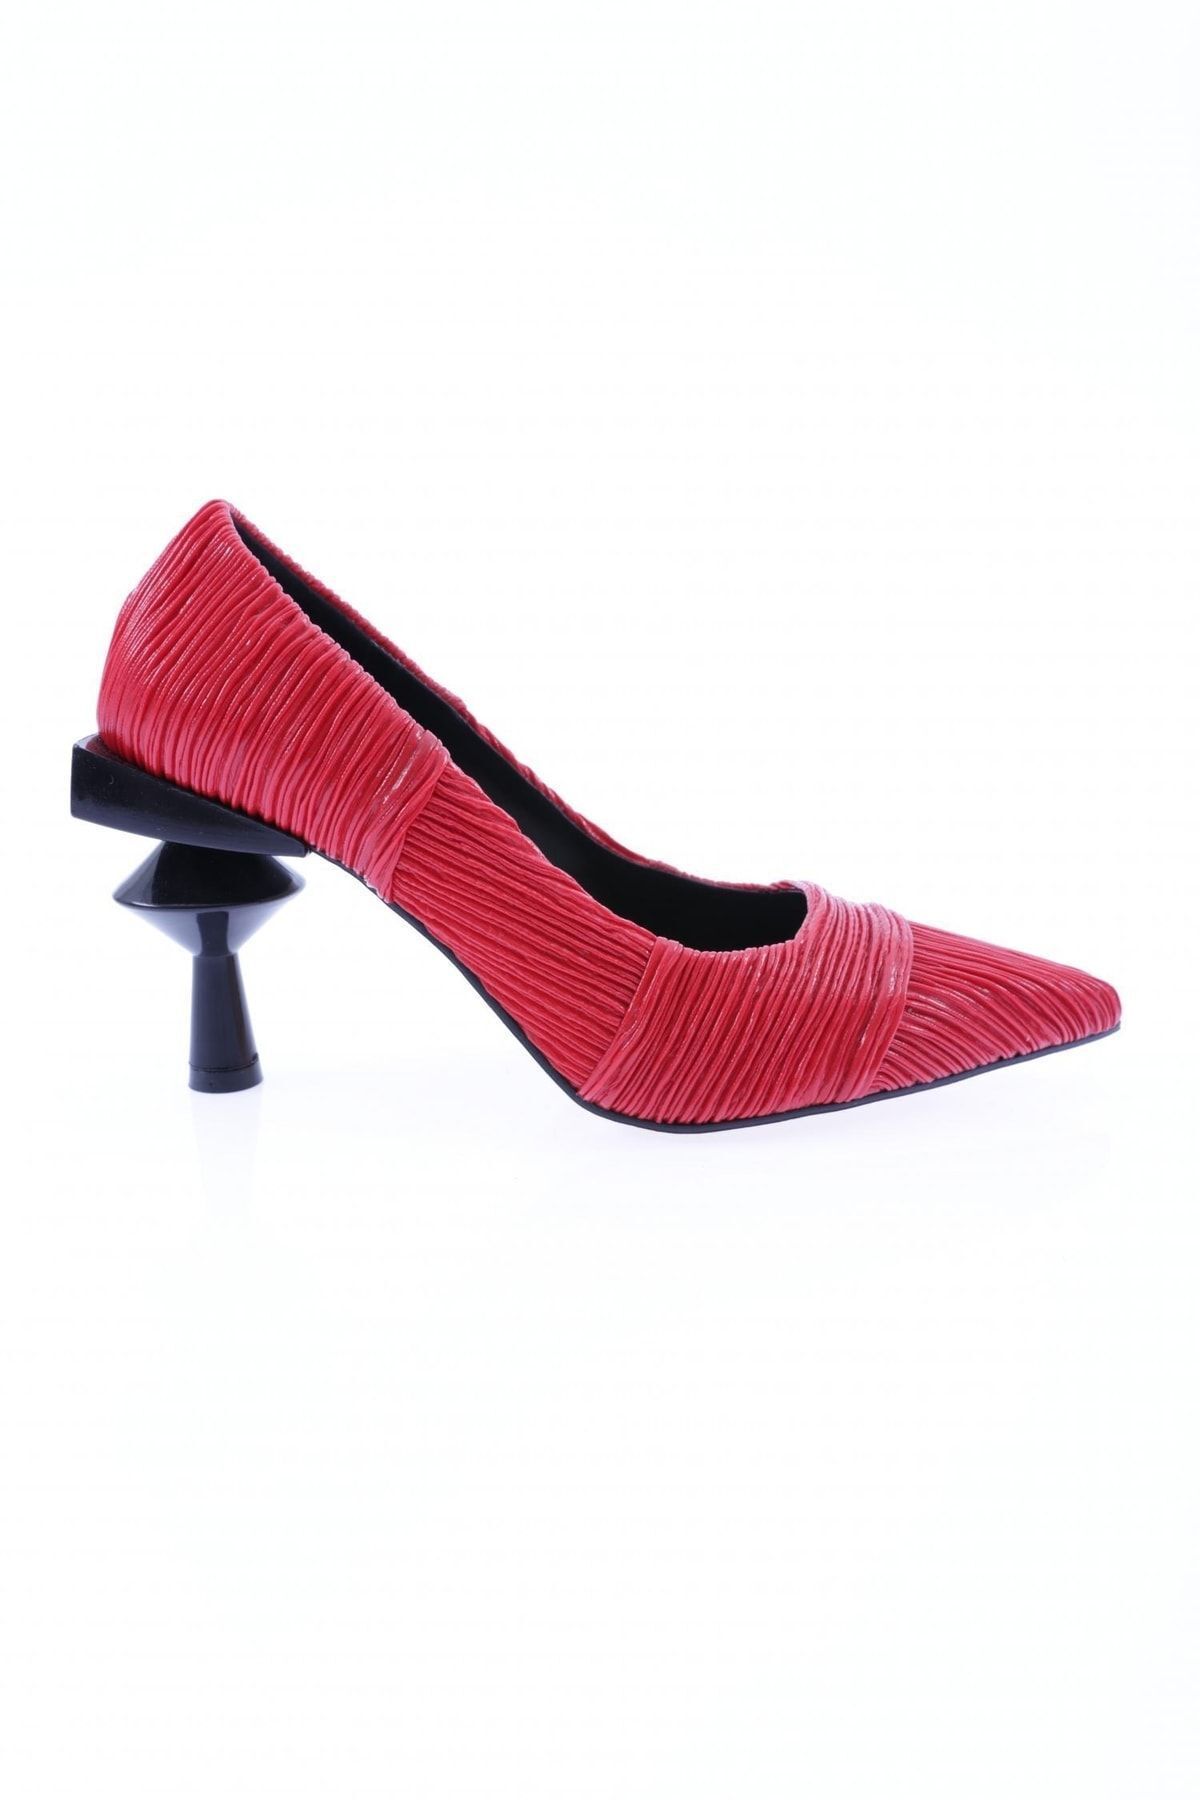 Dgn 1251 Kadın Sivri Burun Parmak Dekolteli Ökçeli Ince Topuklu Ayakkabı Kırmızı Kırışık